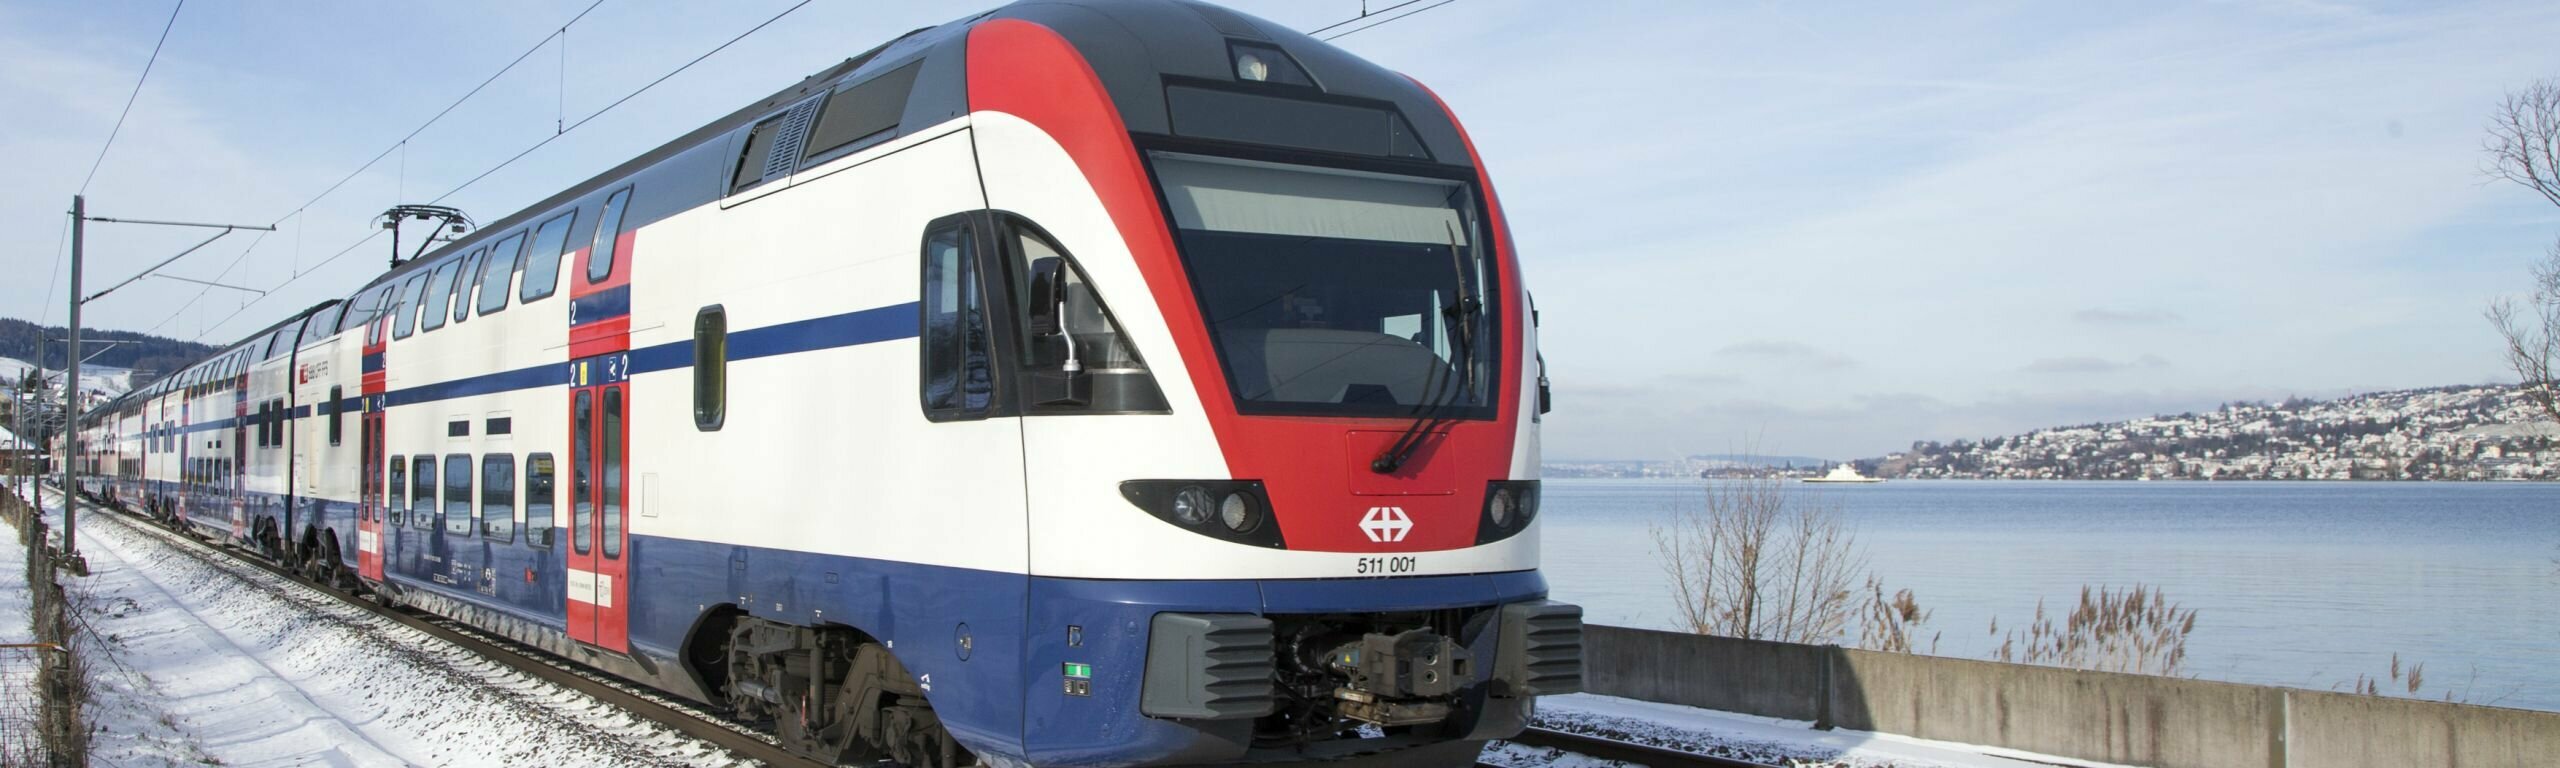 SBB erhält Bonus für pünktliche Zürcher S-Bahn